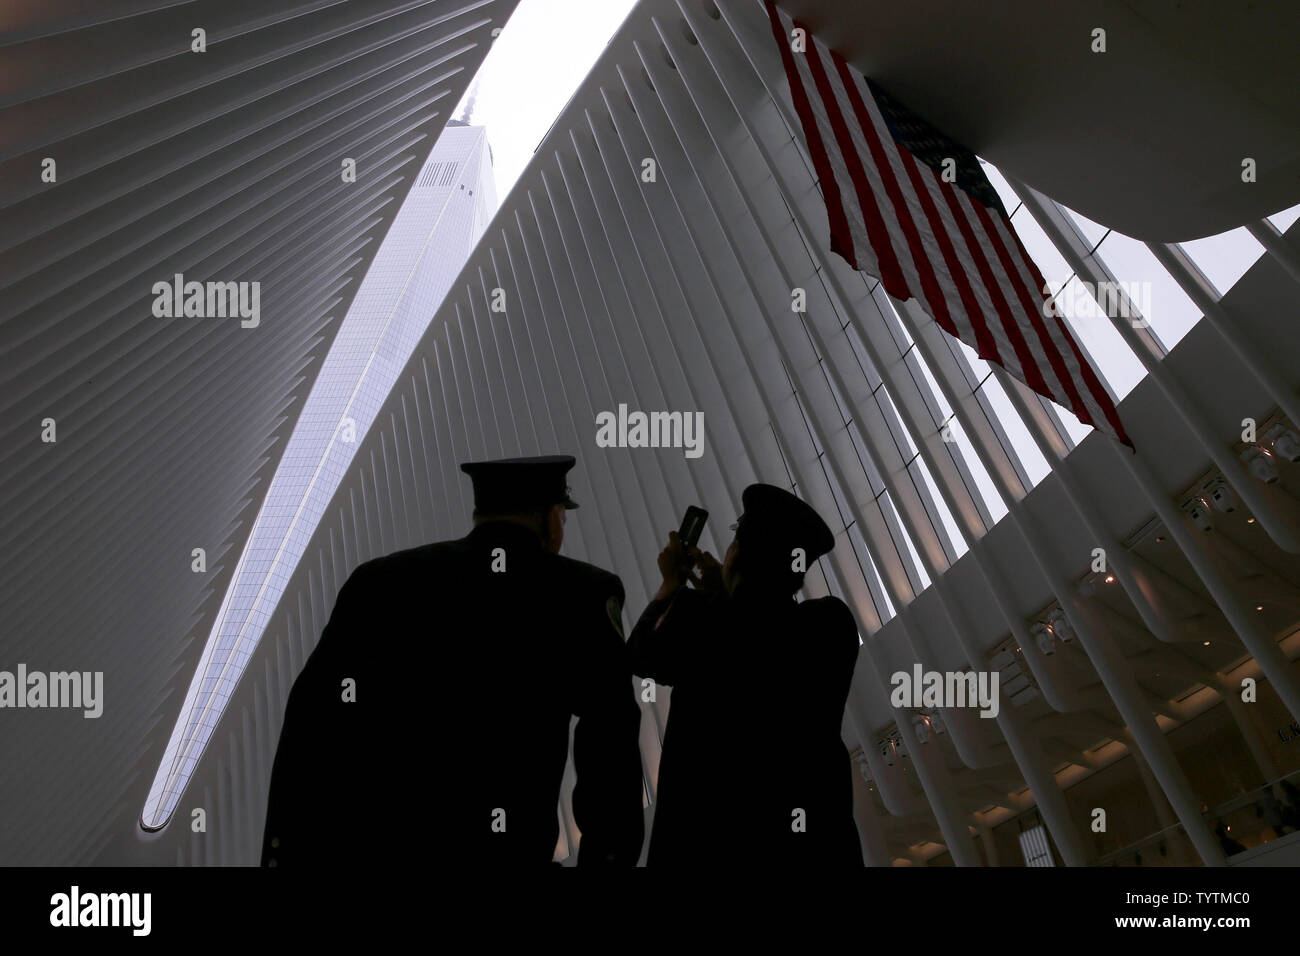 Deux pompiers FDNY arrêter près d'un drapeau américain pour prendre une photo de One World Trade Center au World Trade Center station Oculus sur le 17e anniversaire des attaques terroristes sur le World Trade Center à Ground Zero à New York, le 11 septembre 2018. Photo de John Angelillo/UPI Banque D'Images